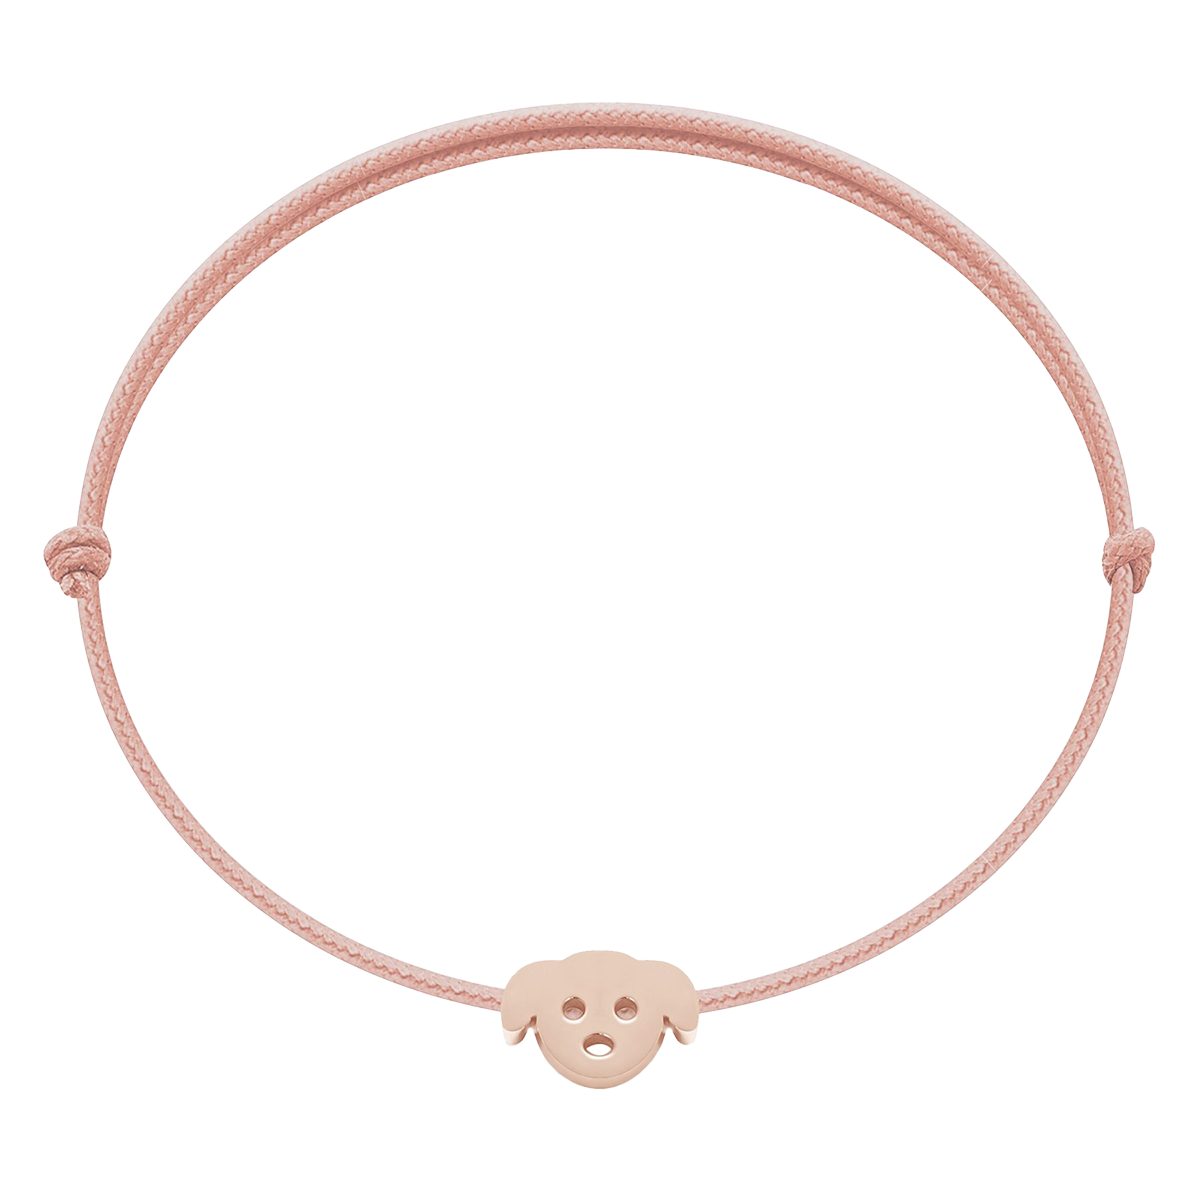 Bransoletka z pieskiem Etincelle, różowe pozłocenie, na cienki różowym sznurku